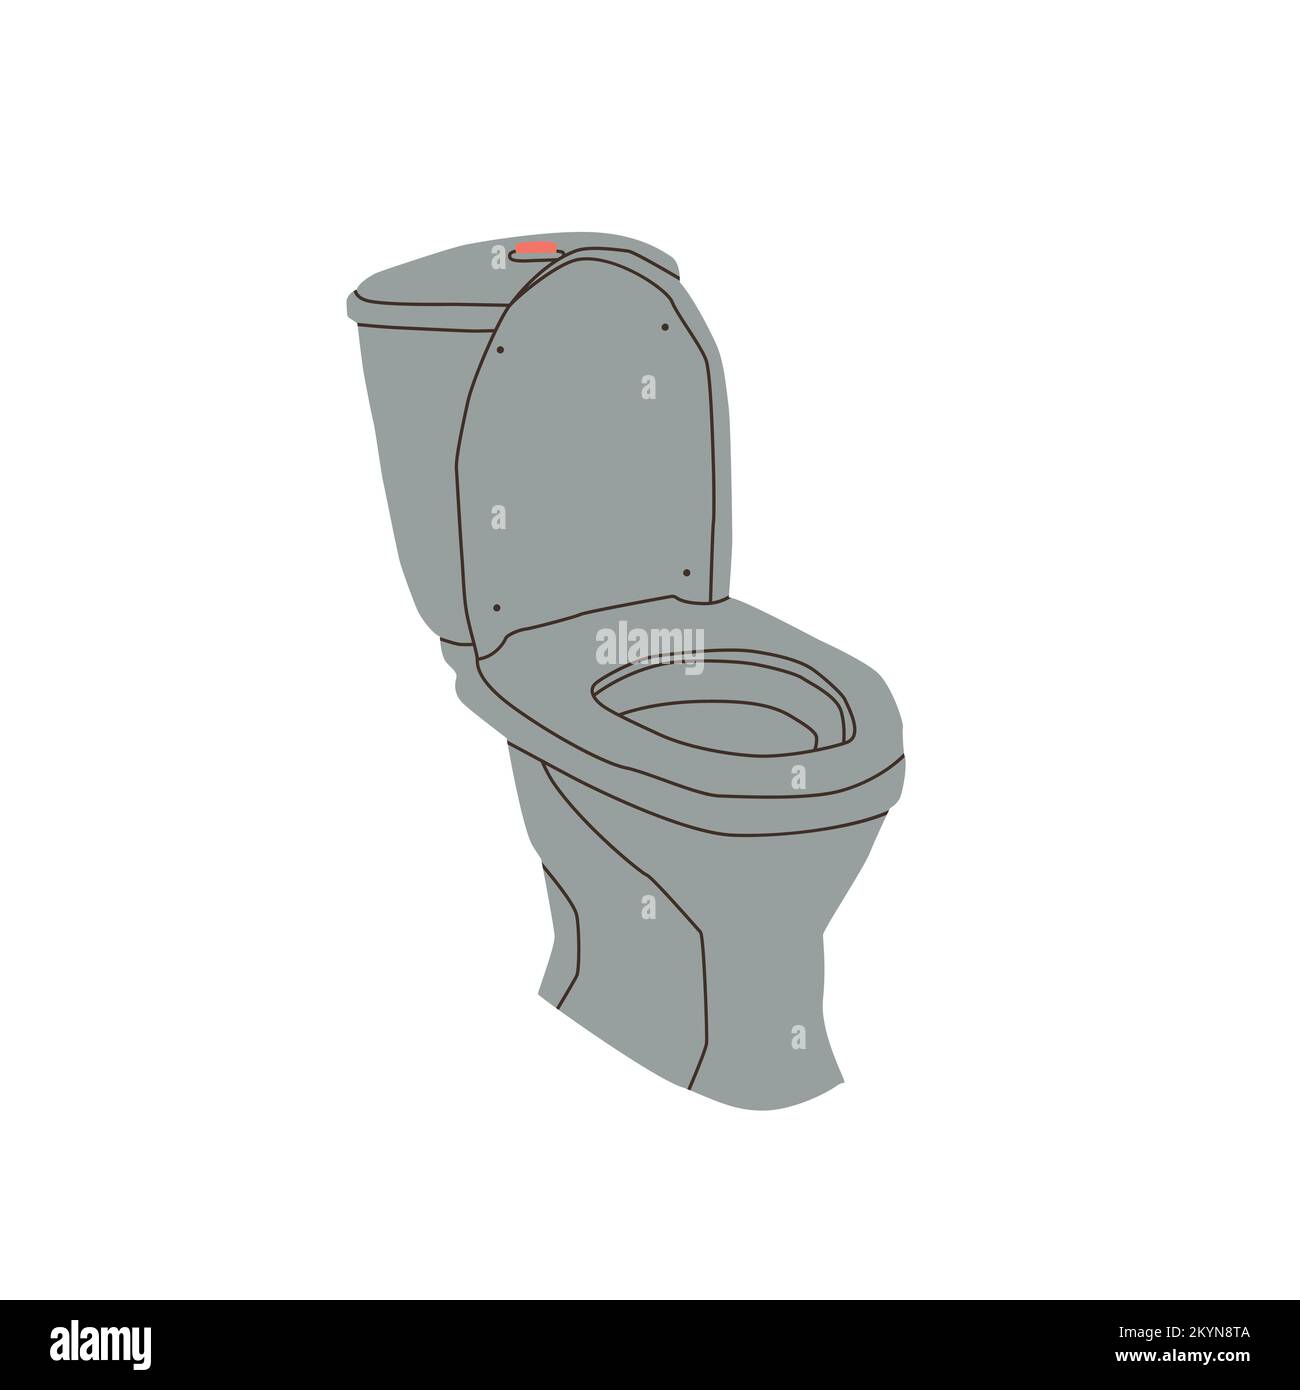 Klassische graue Toilette mit Zisterne. Vektordarstellung isoliert auf weißem Hintergrund. Stock Vektor